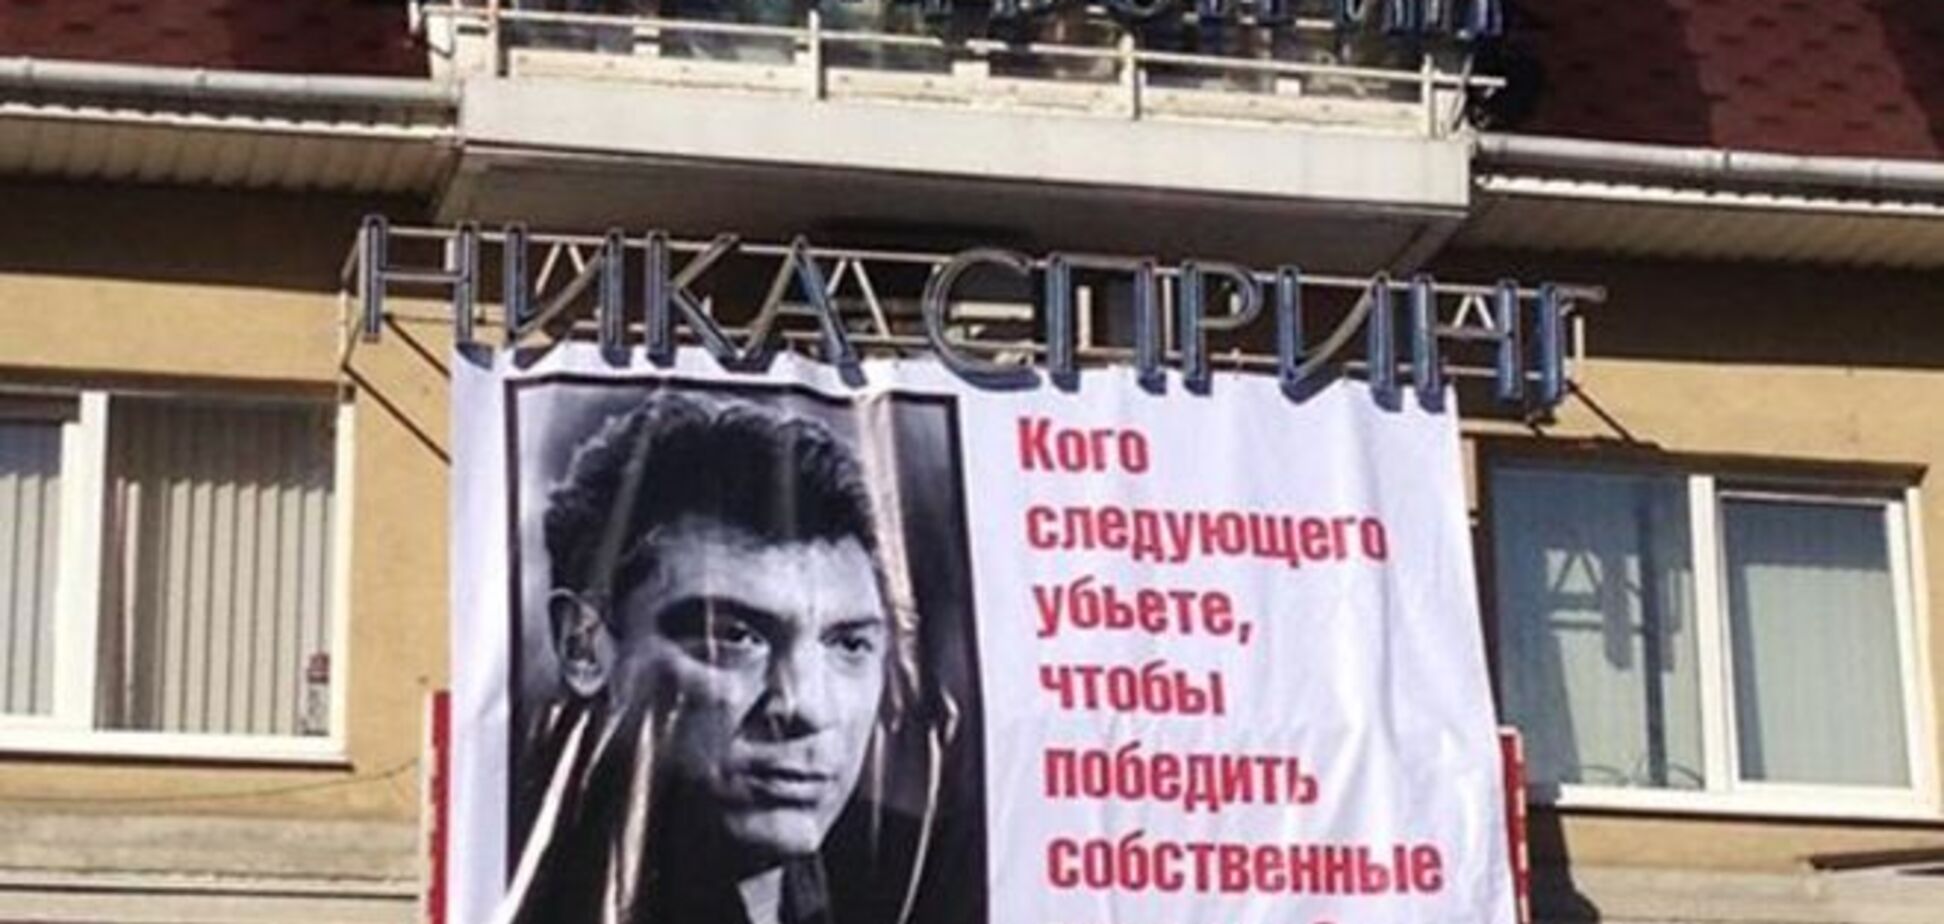 В Нижнем Новгороде прокуратура заподозрила экстремизм в вывешенном на балконе портрете Немцова